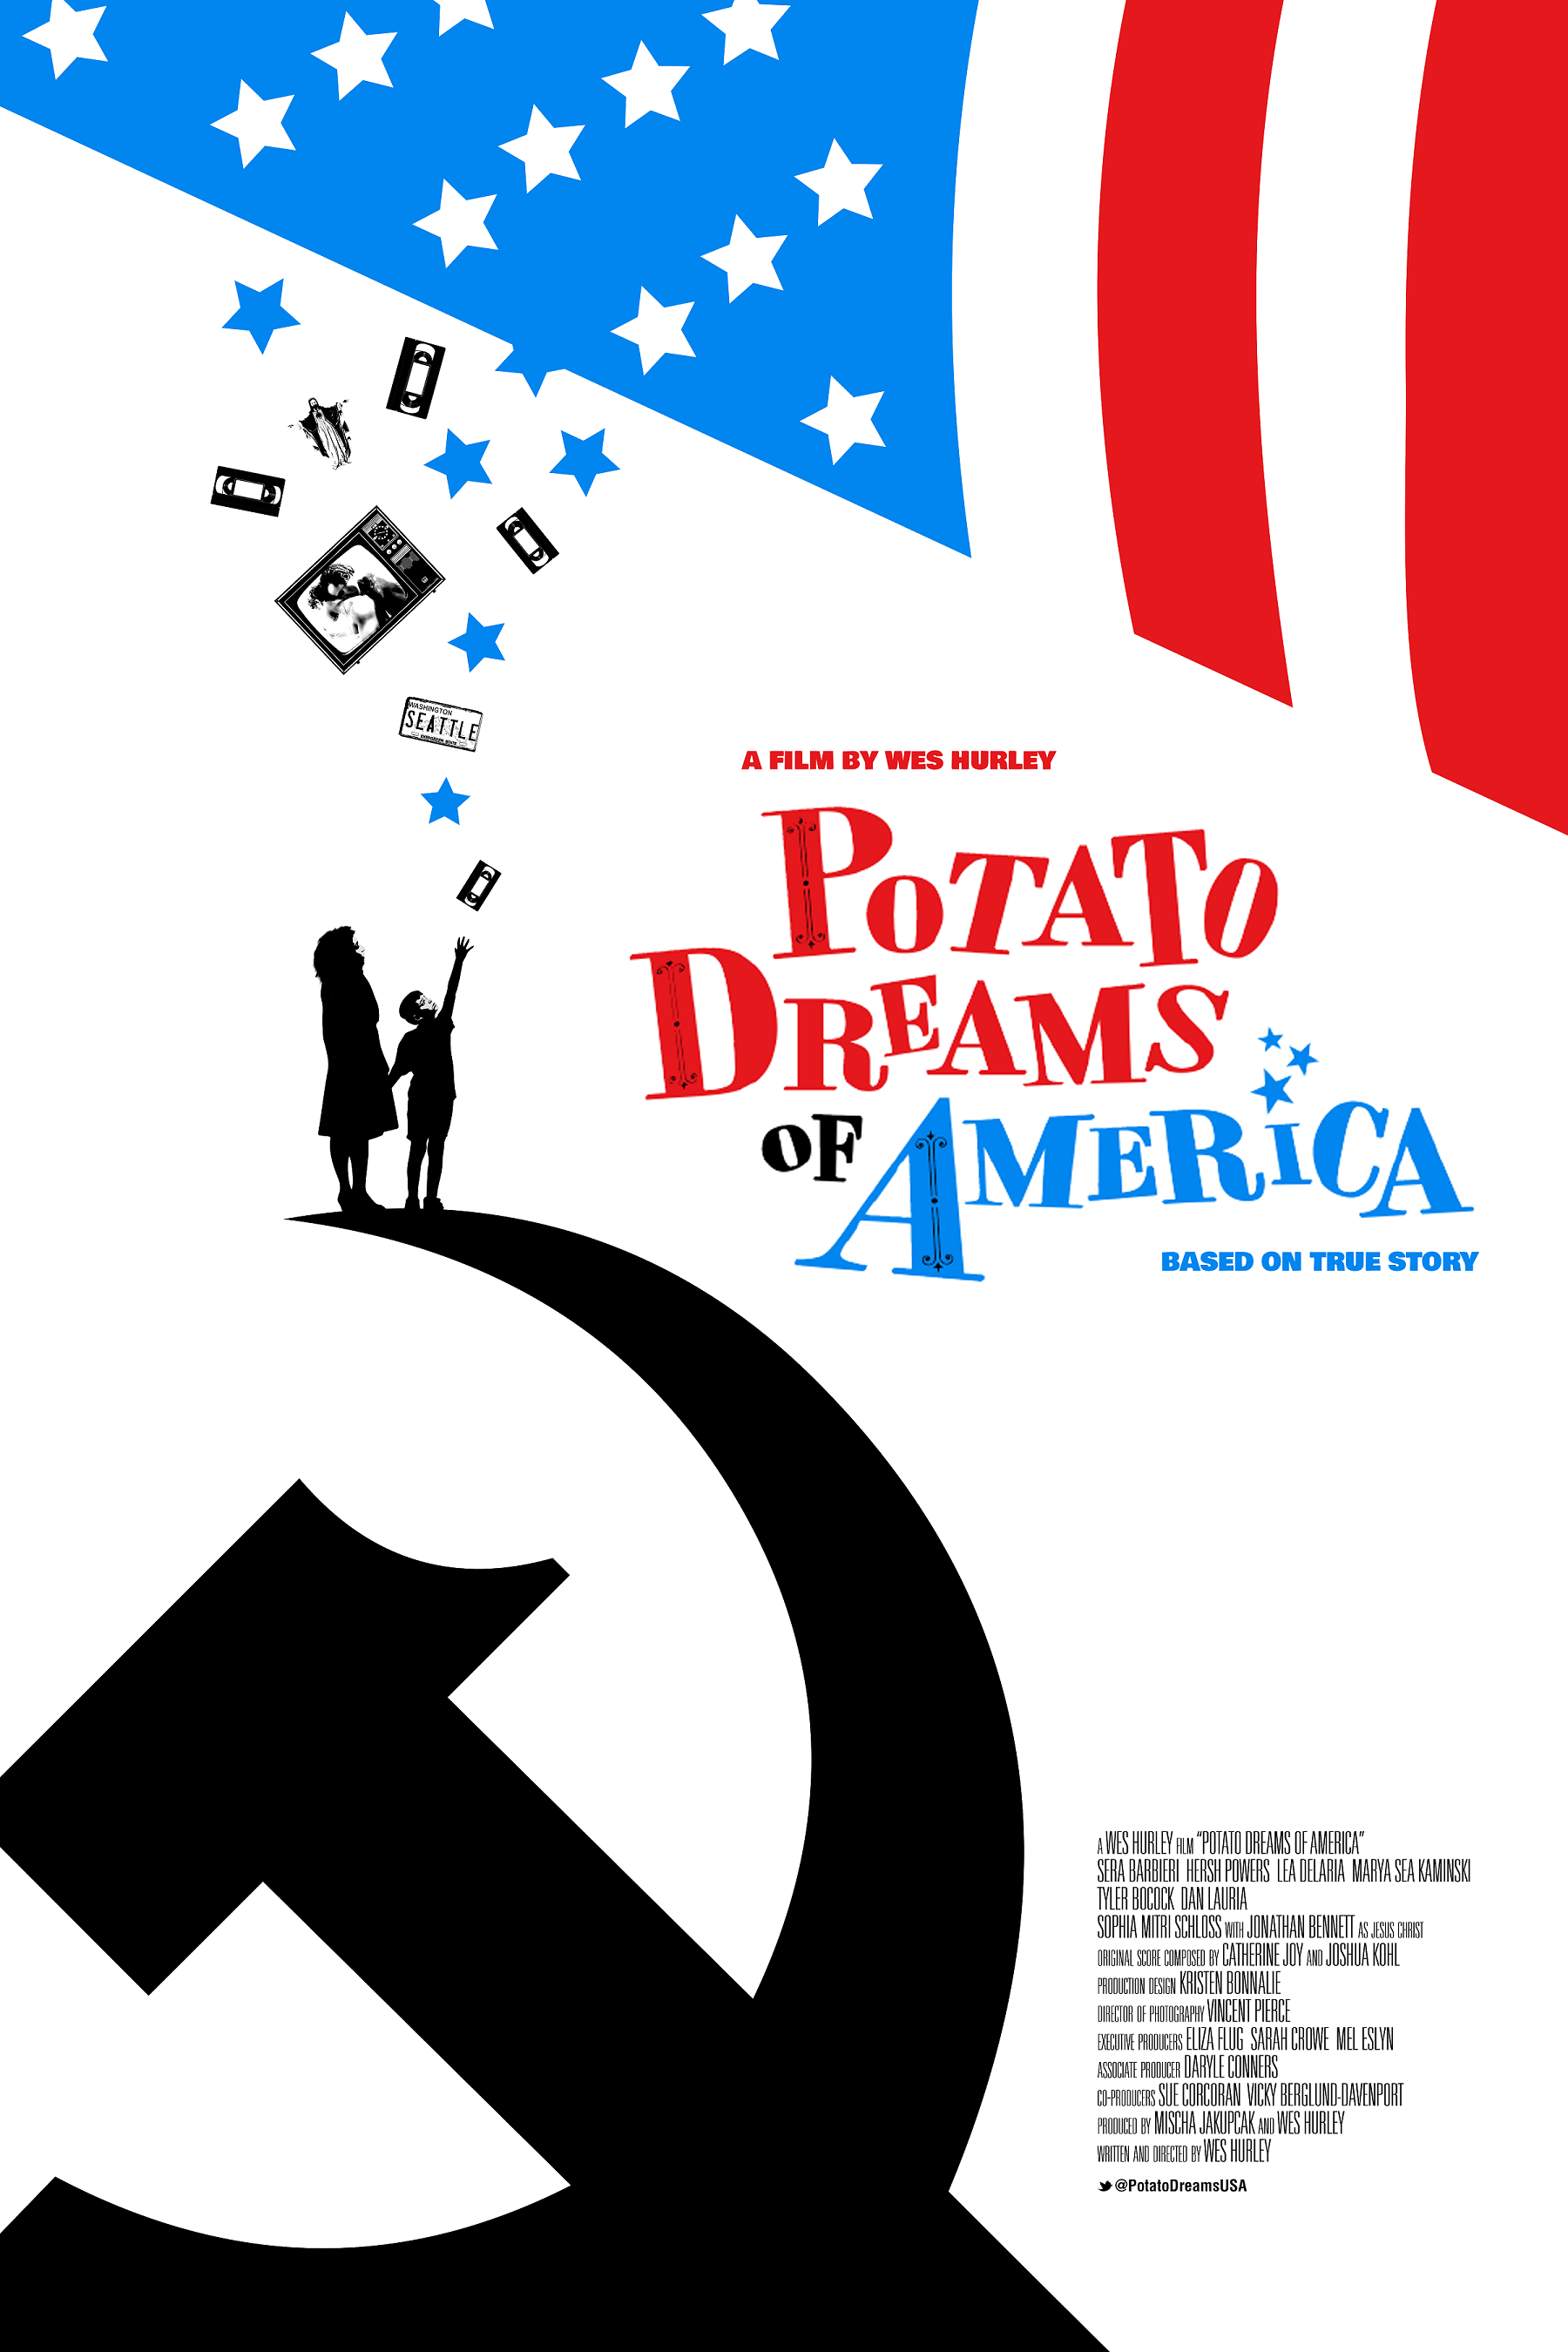 POTATO DREAMS OF AMERICA Poster_24x36